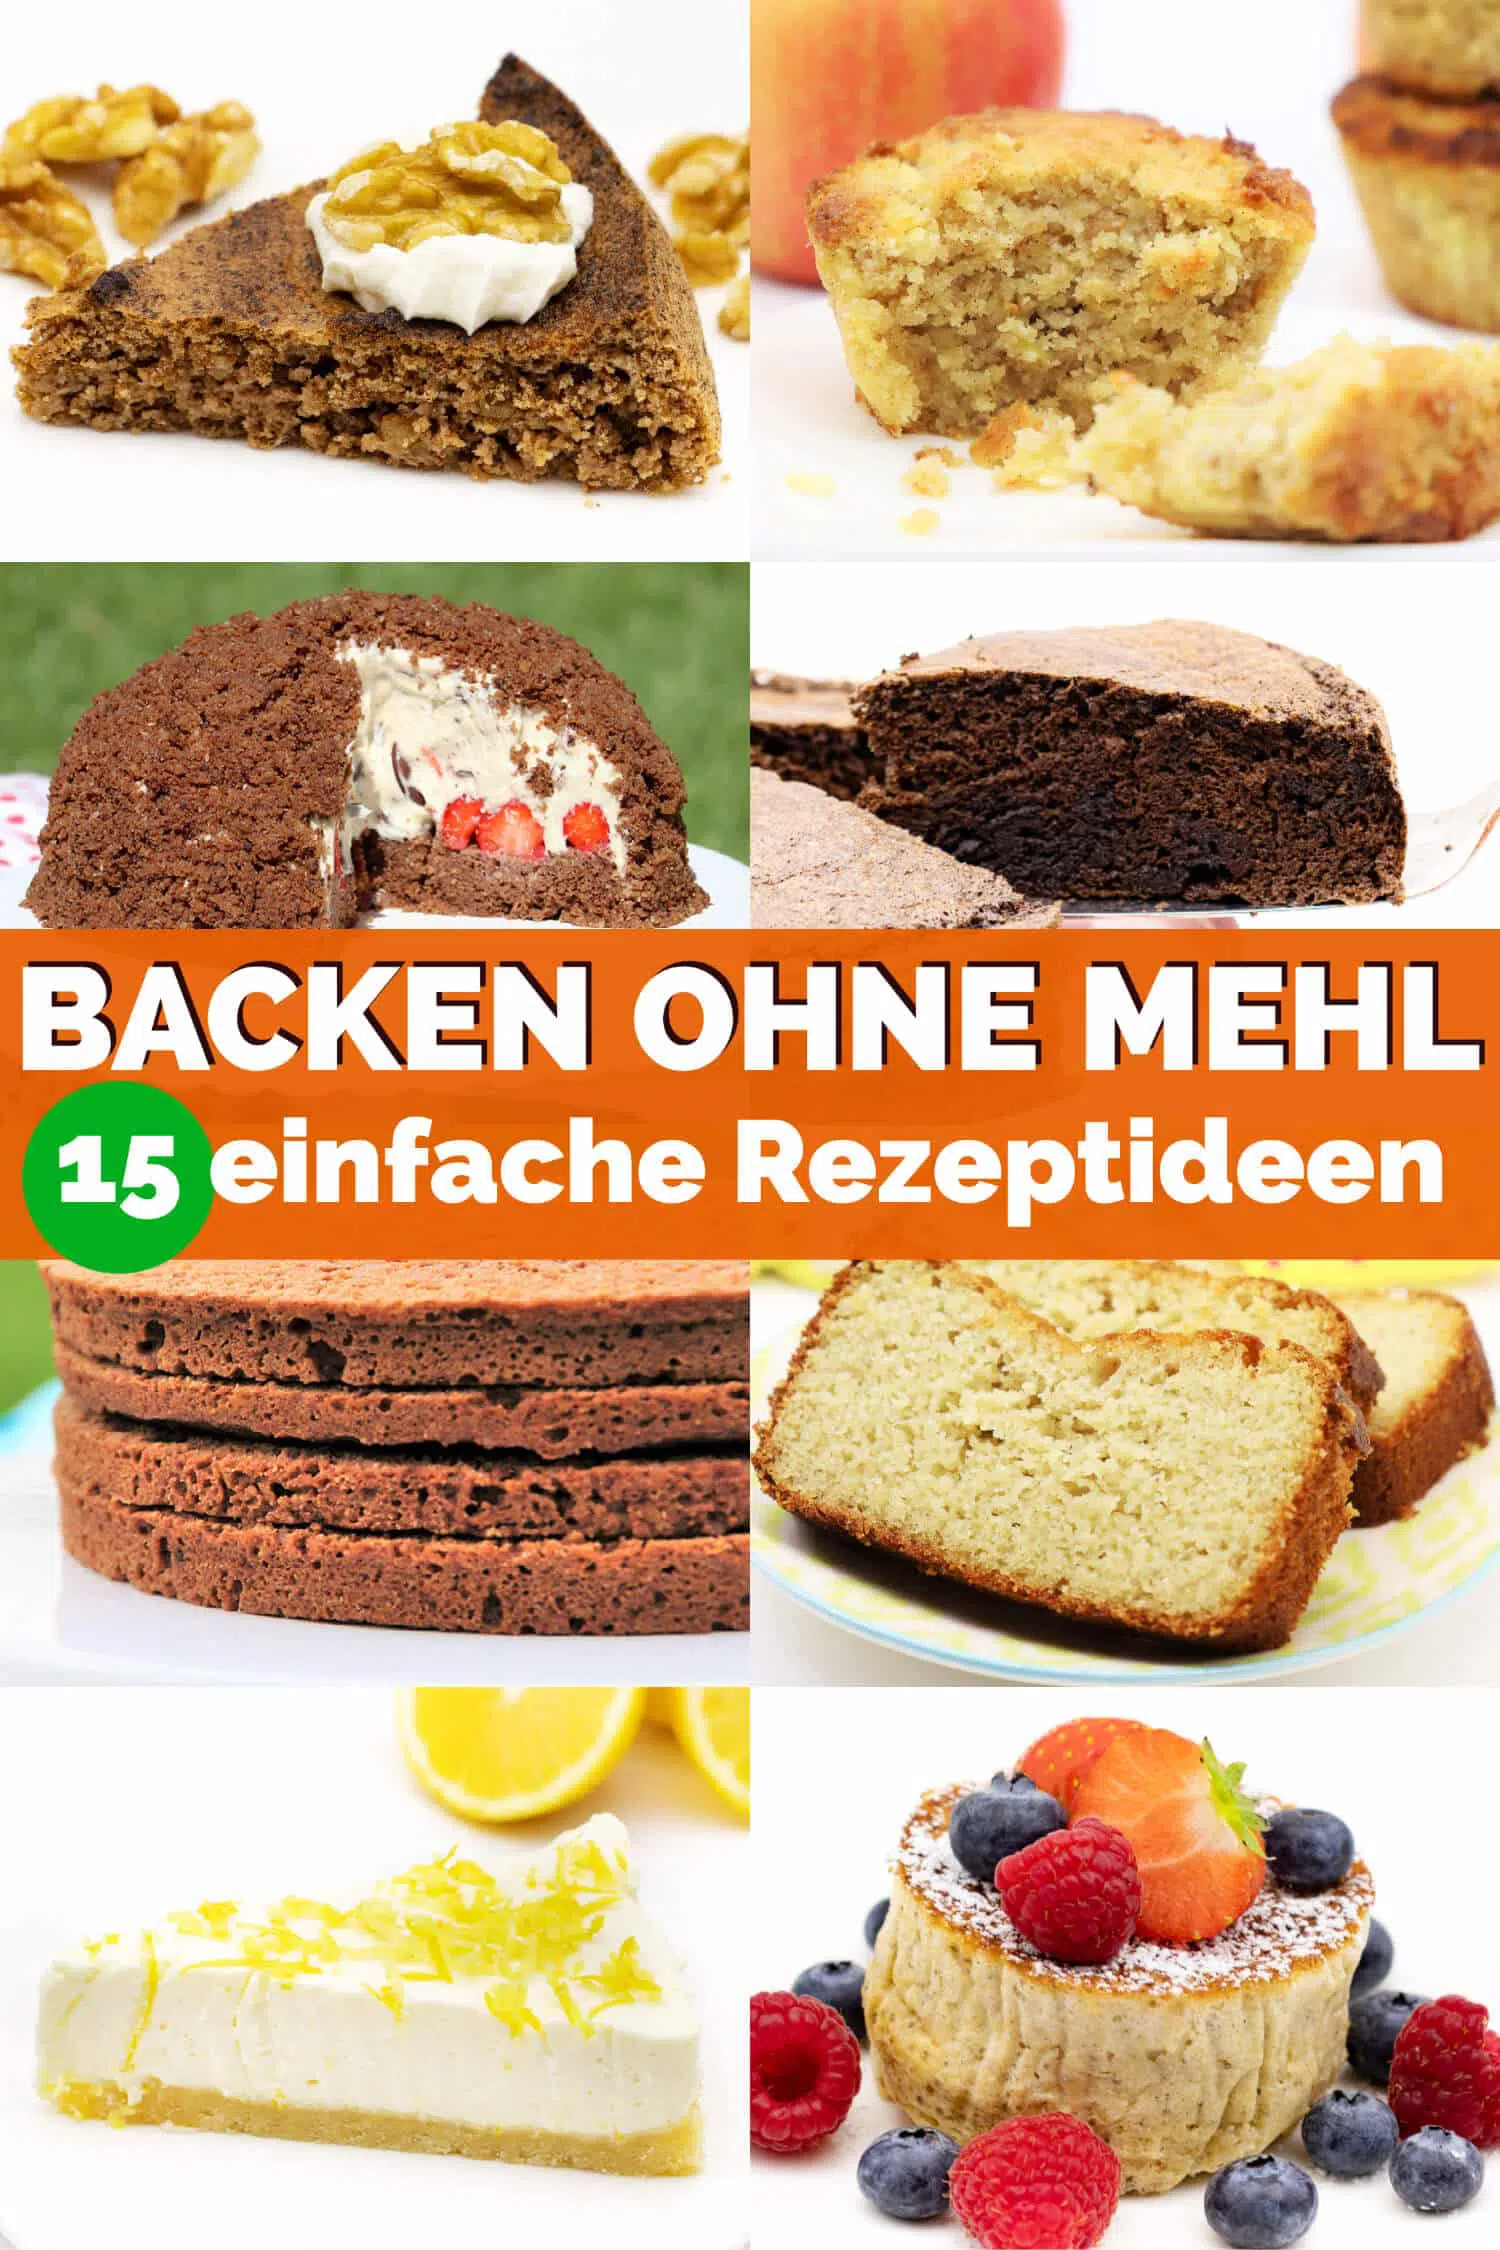 Backen ohne Mehl - 15 einfache Rezepte für Kuchen, Muffins, Brot und Co. ohne Zucker